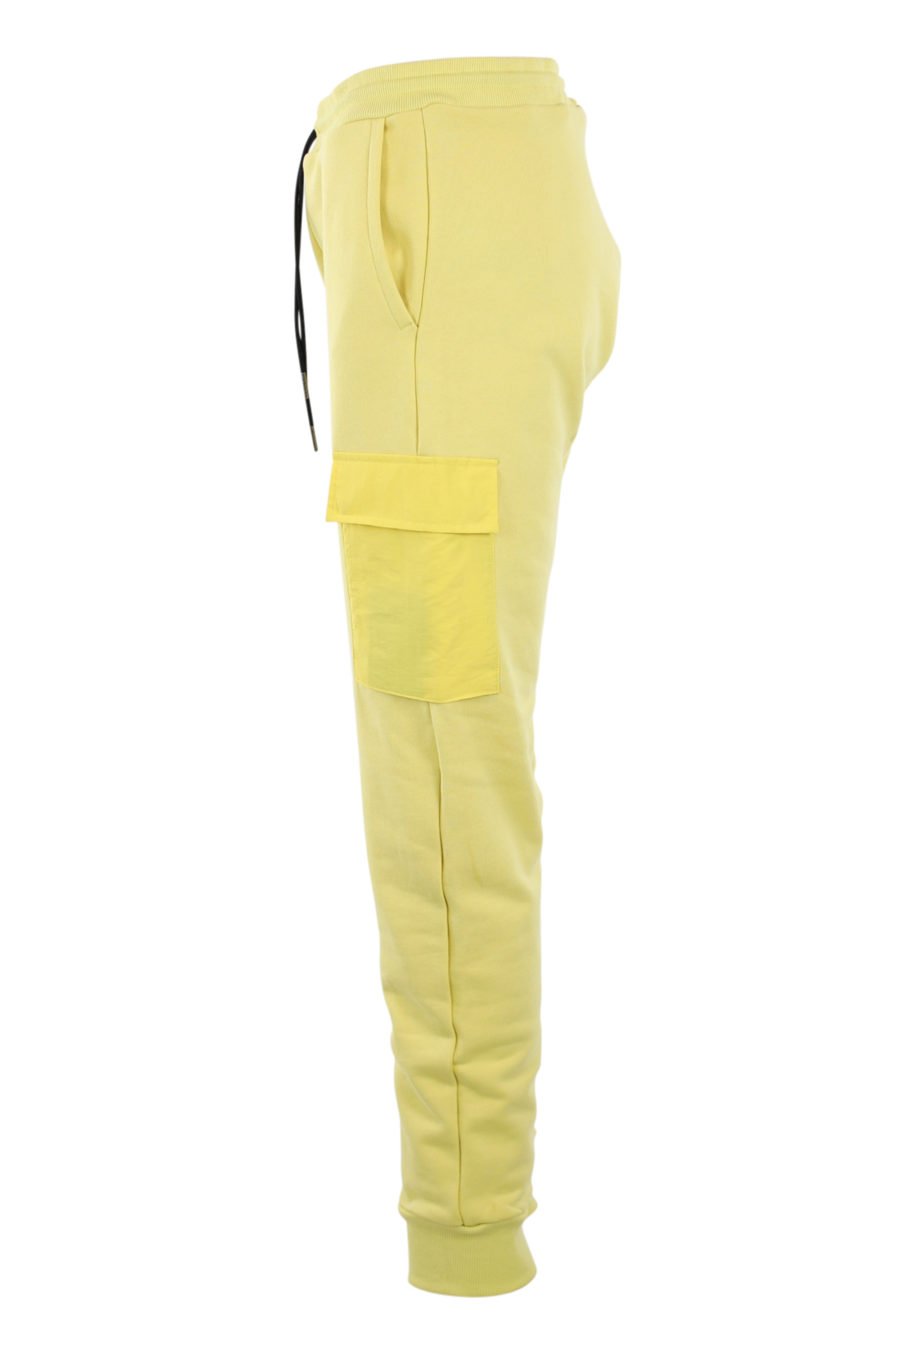 Bas de survêtement jaune avec poches - IMG 0909